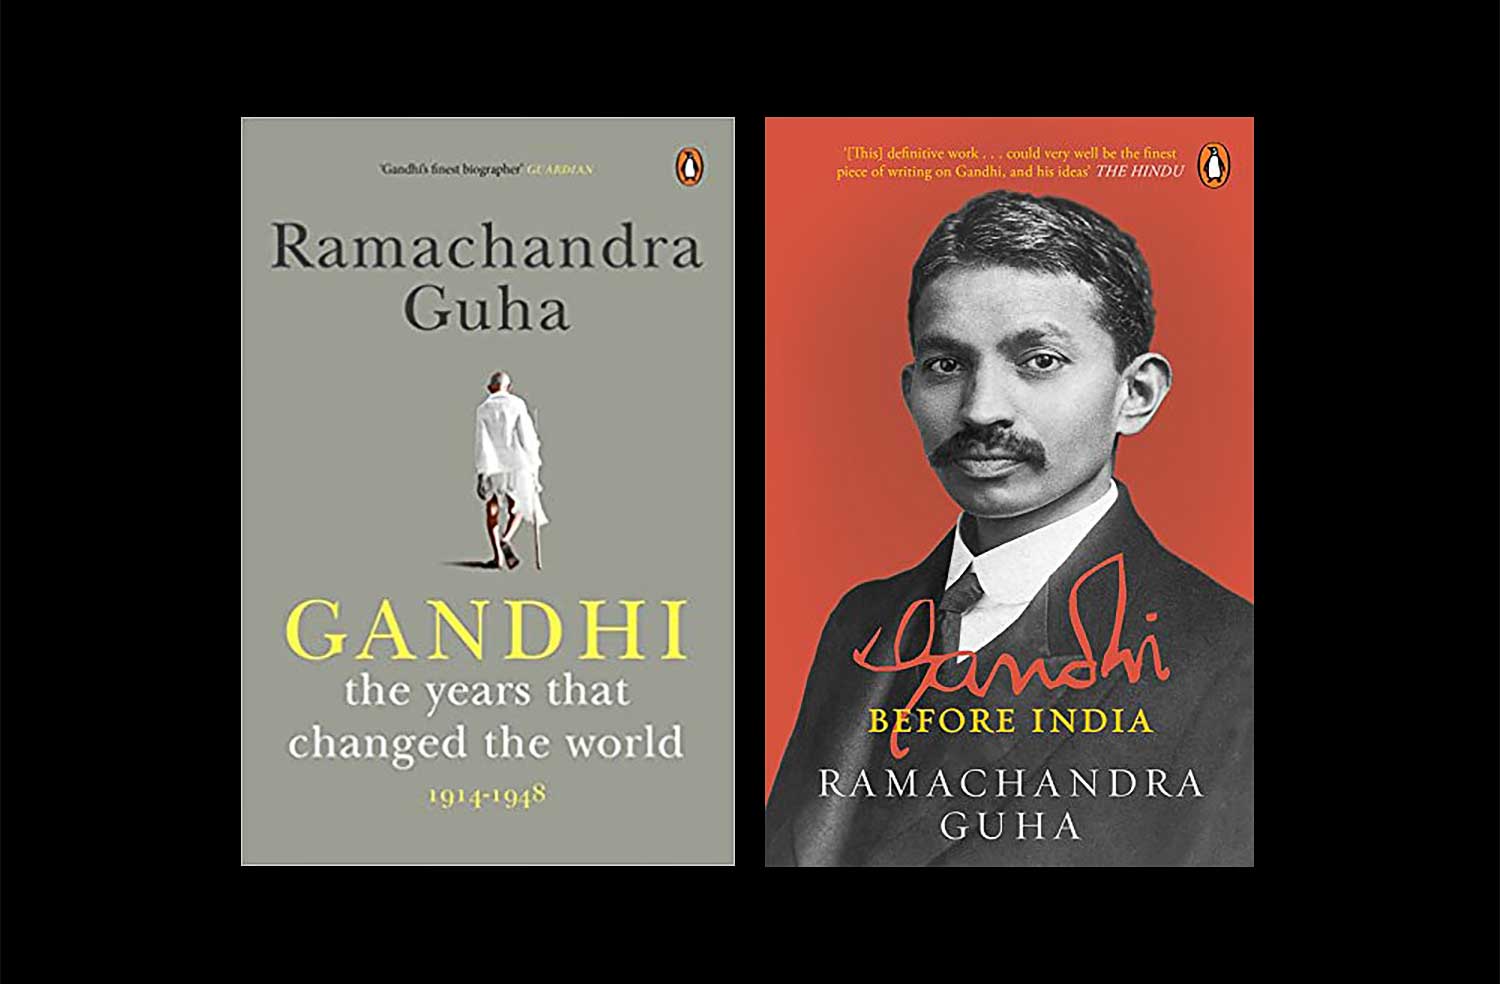 Ramachandra Guha’s Gandhi